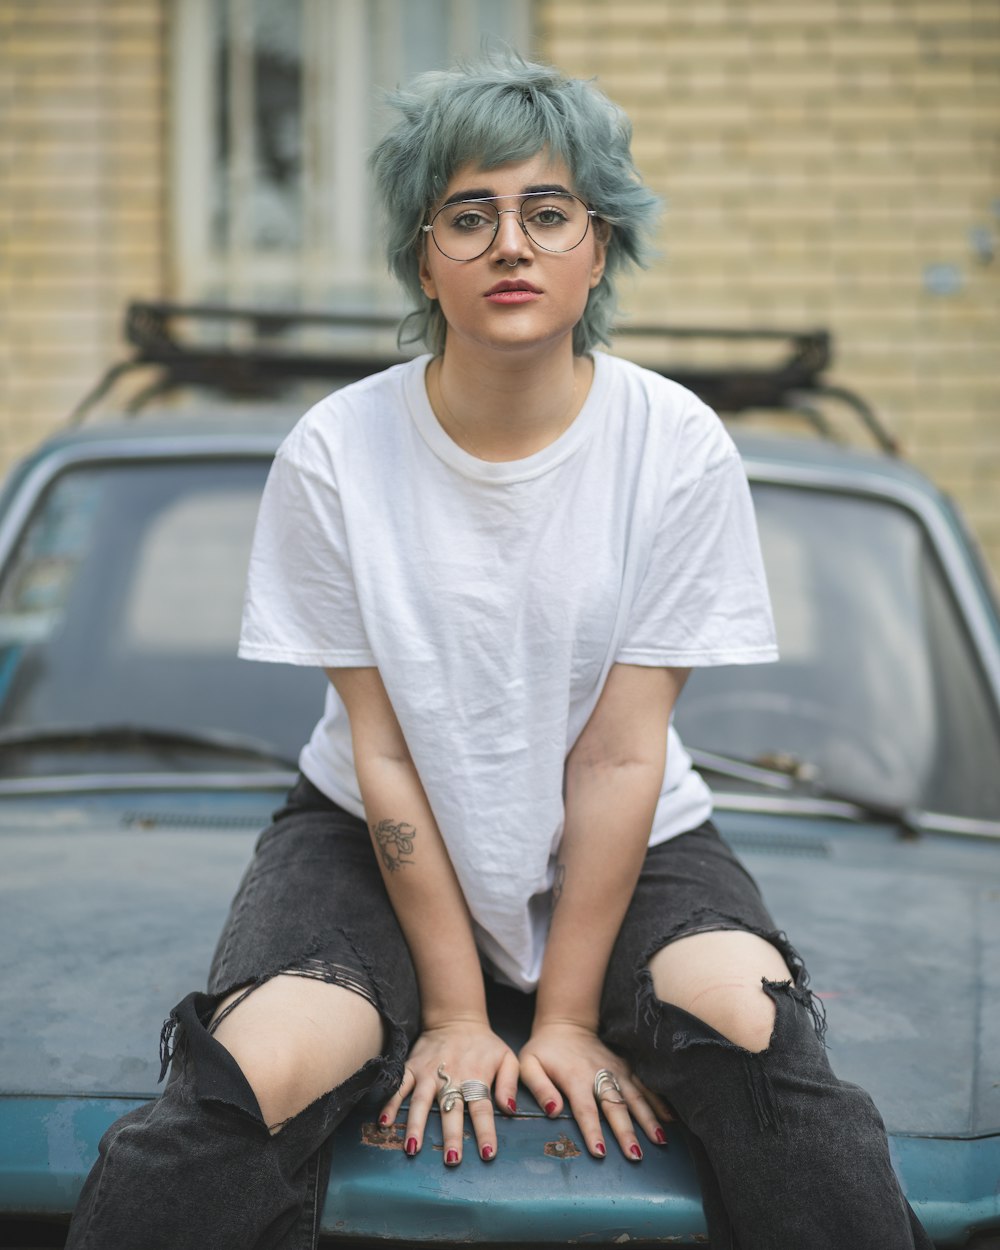 Eine Frau mit blauen Haaren sitzt auf der Motorhaube eines Autos